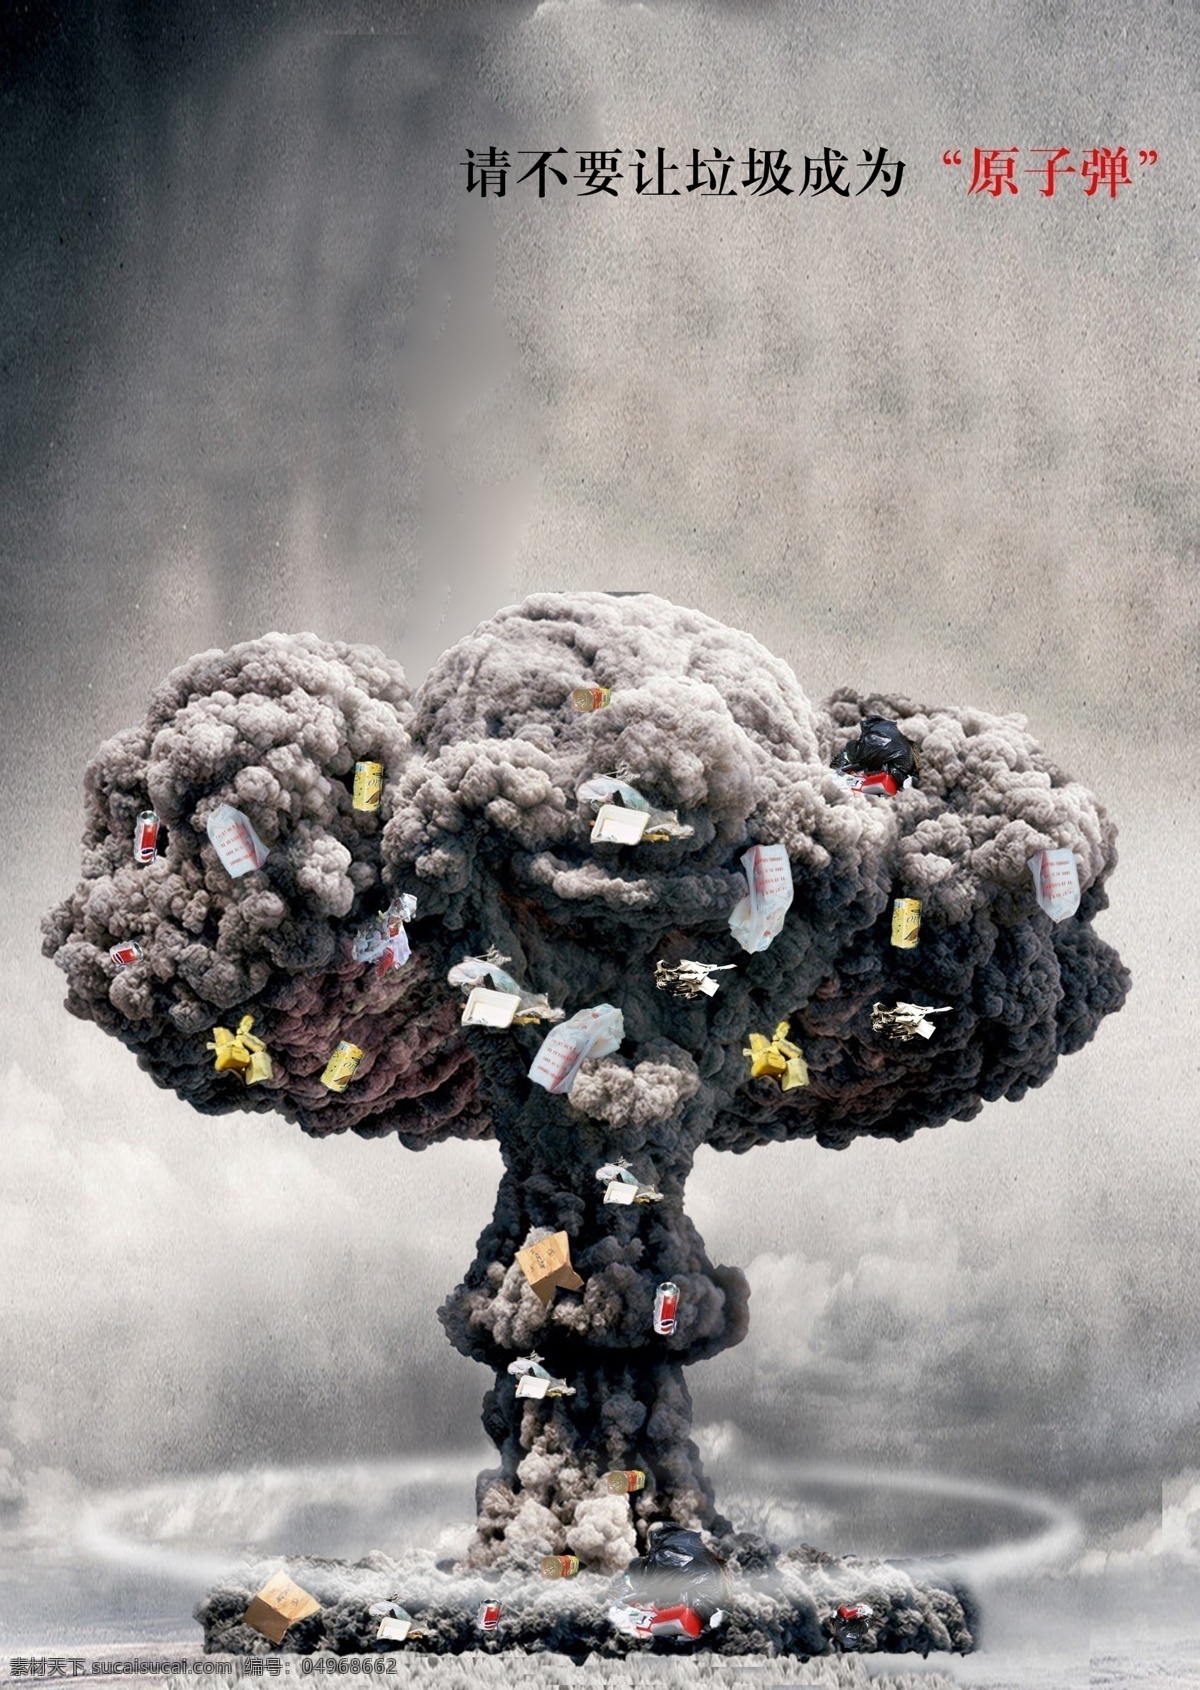 环保海报 环保 海报 垃圾 原子弹 灰色